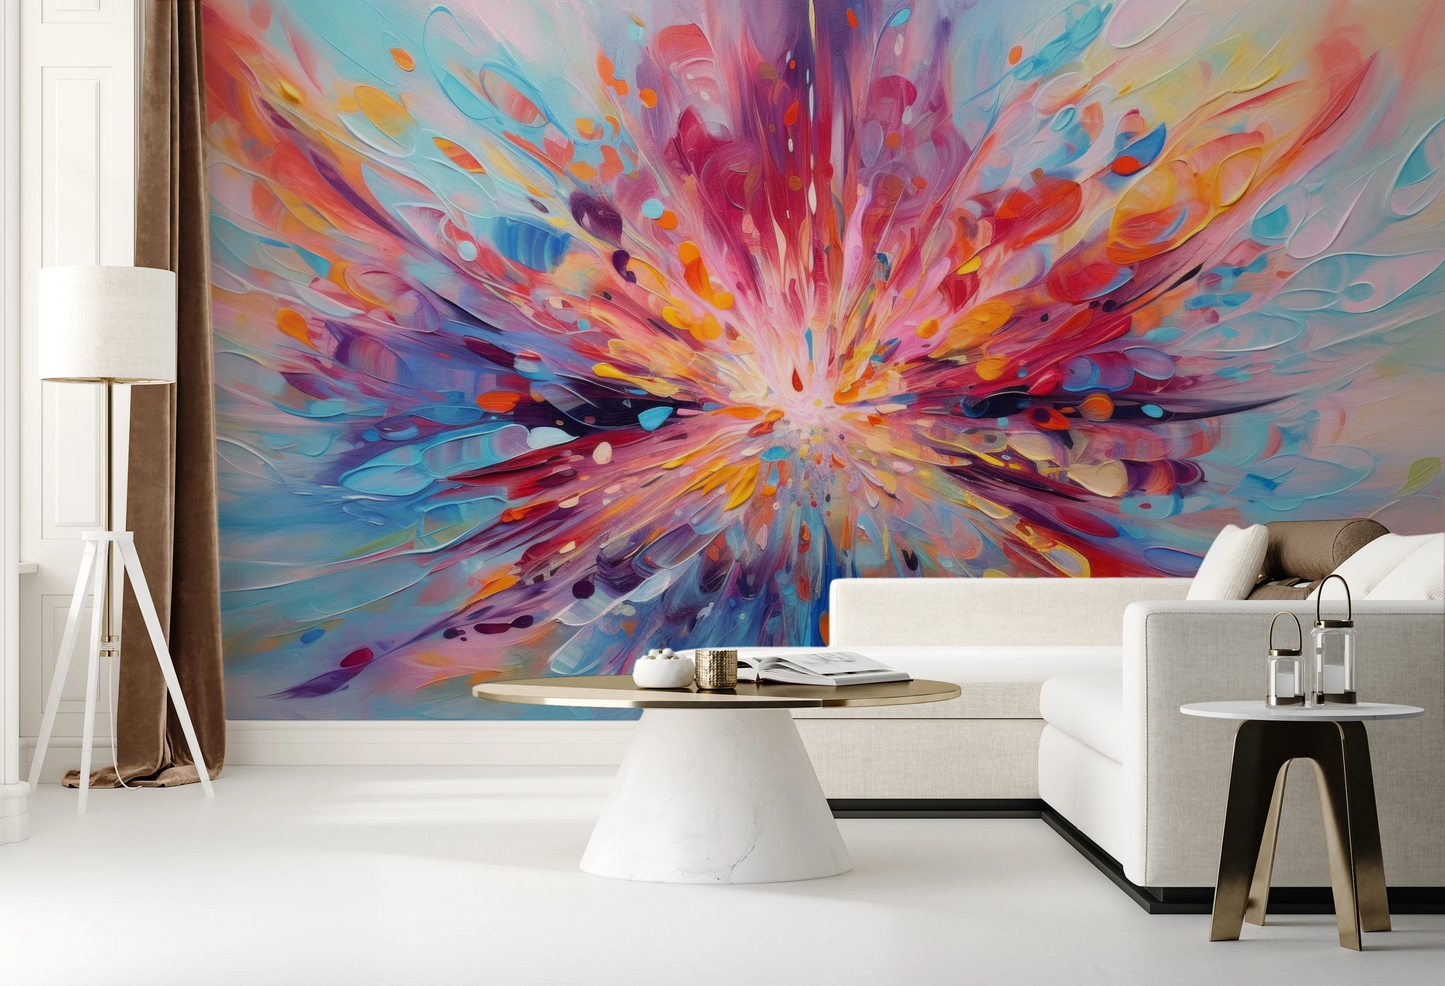 Fototapeta malowana o nazwie Explosion of Joy pokazana w aranżacji wnętrza.